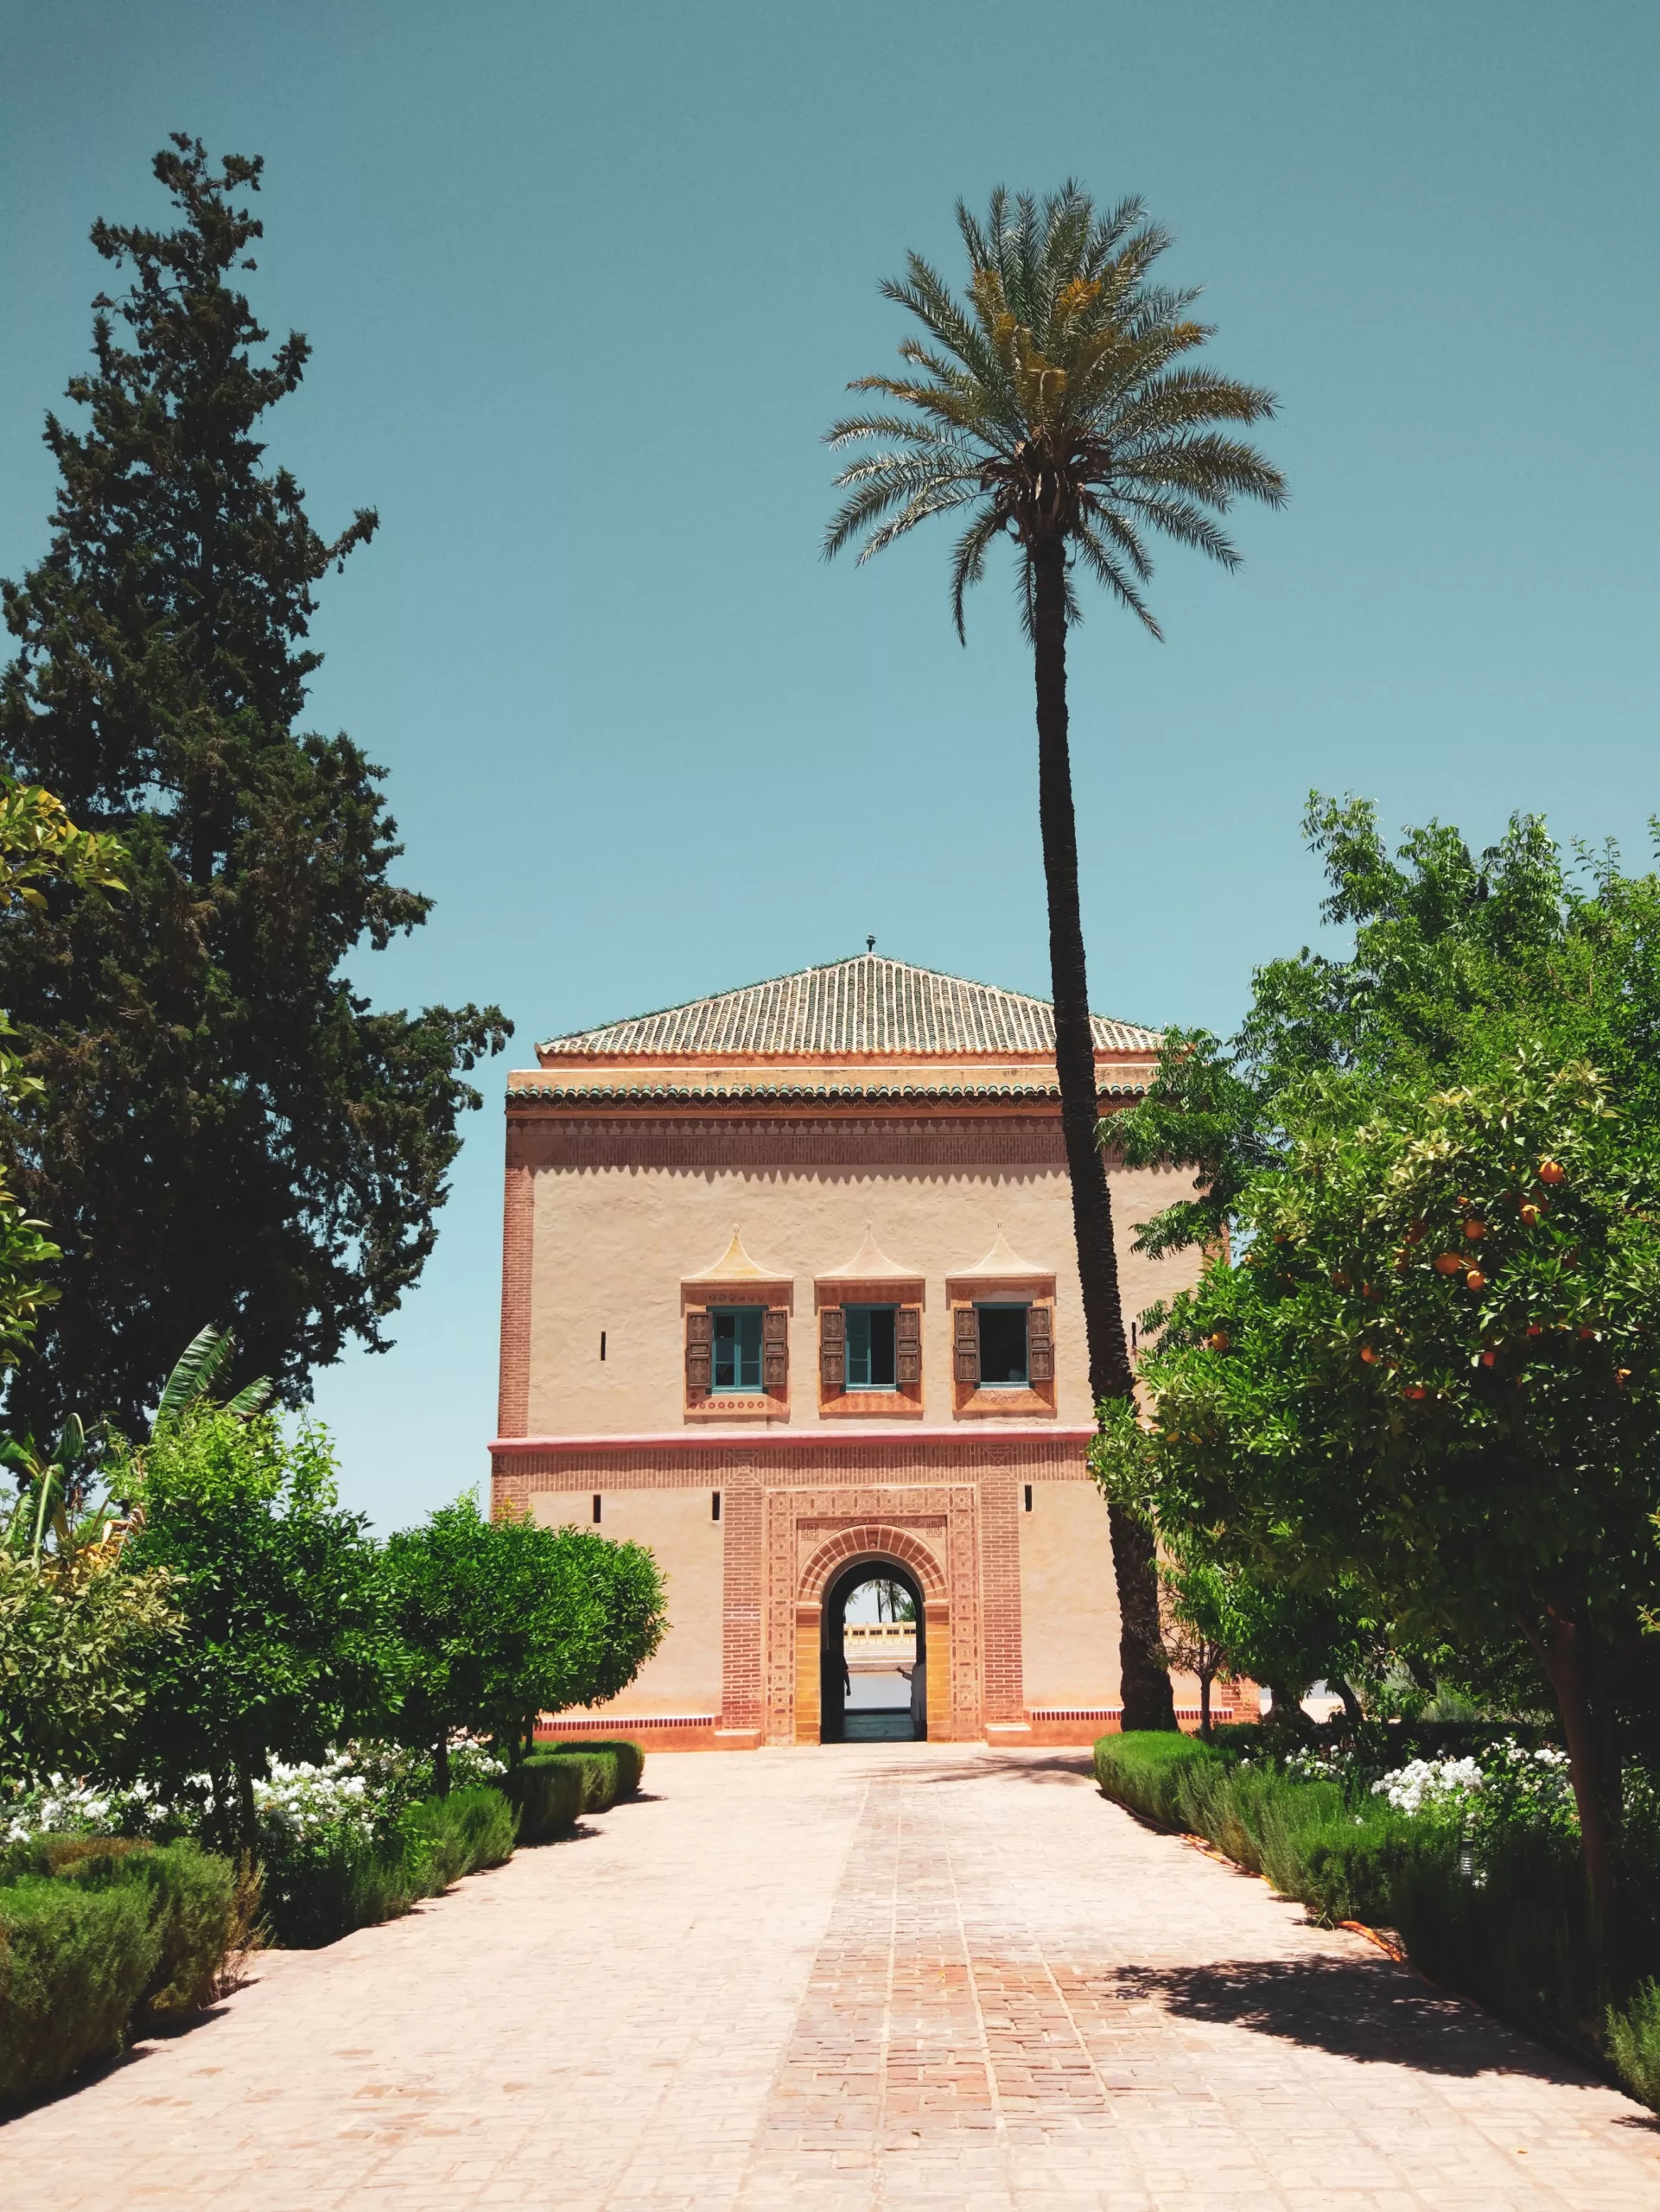 Jardines de la Menara en Marrakech